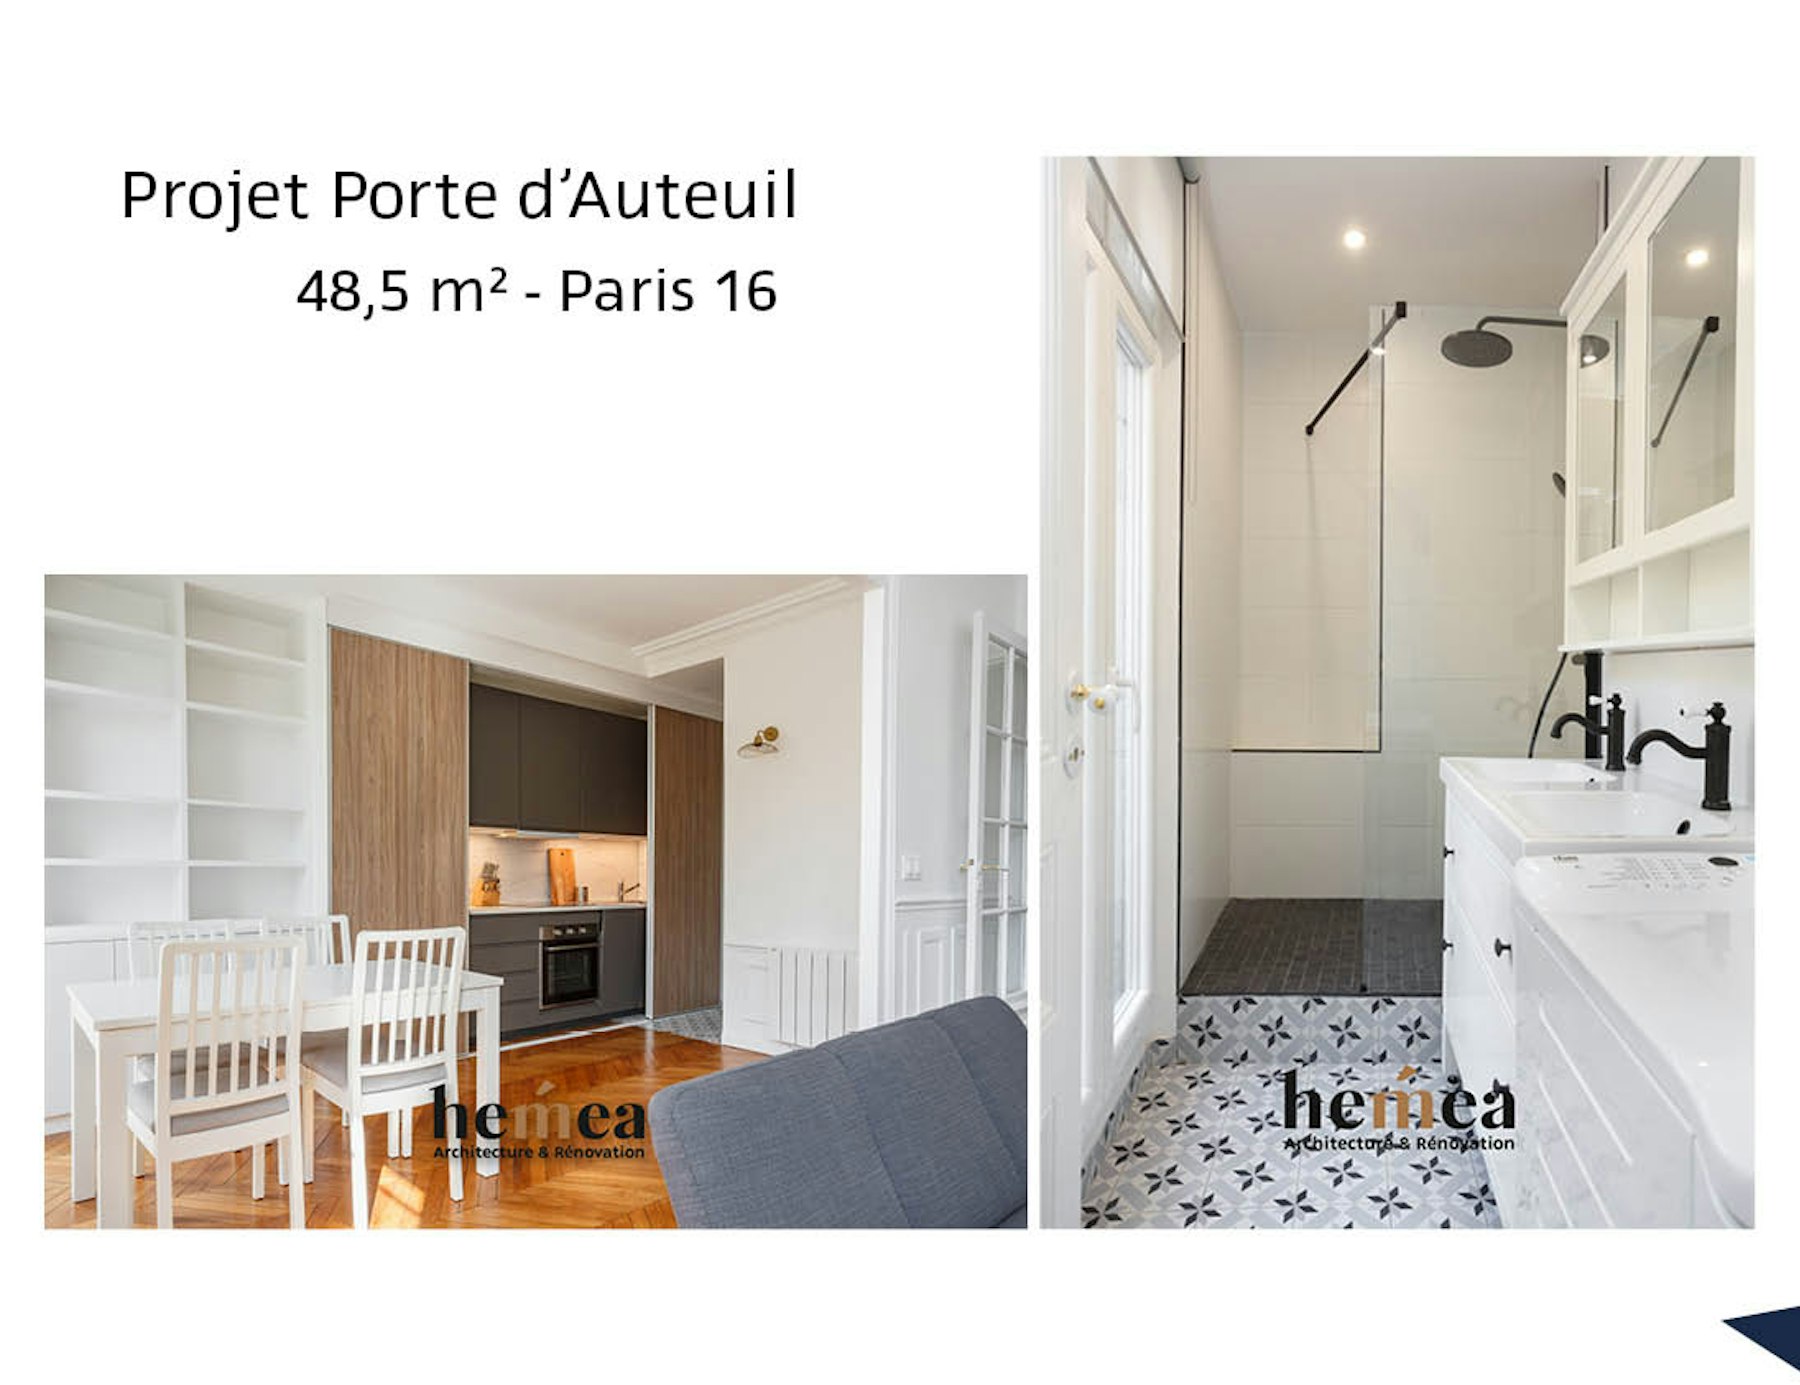 photo Projet Porte d'Auteuil - 48,5m² - Paris 16 Léa Mast - Architecte hemea